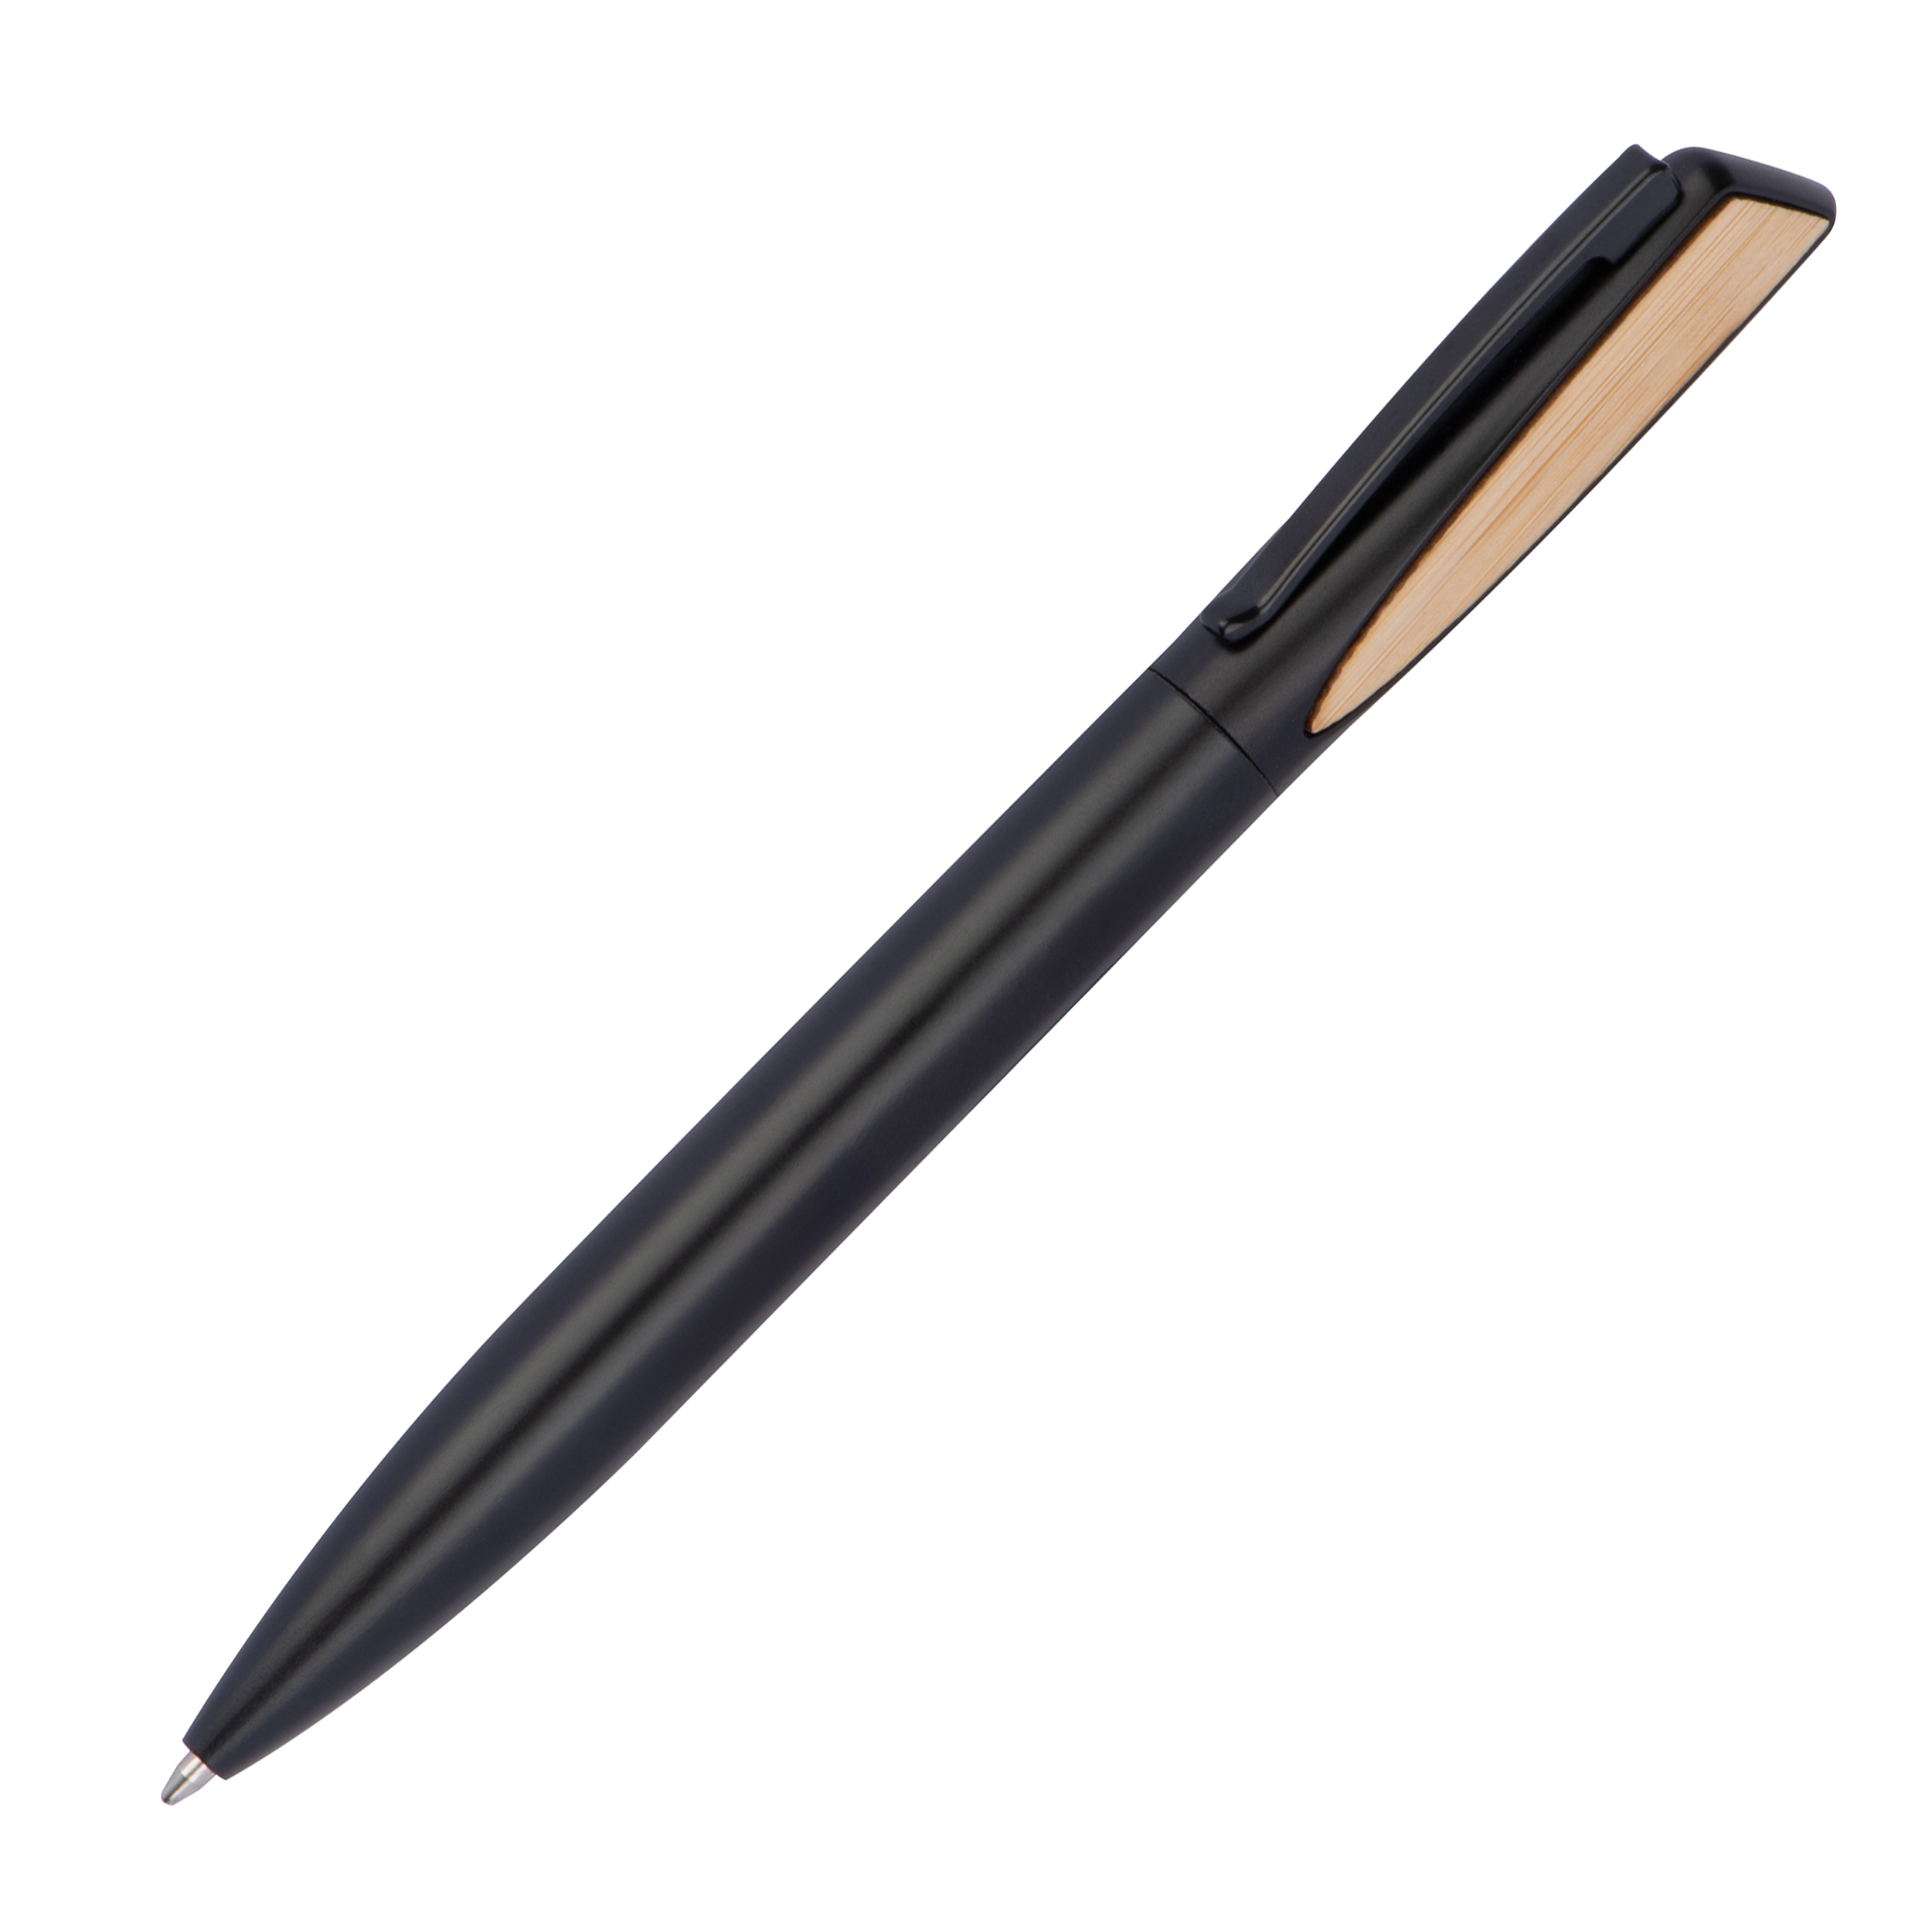 Penna in metallo con applicazioni in bamboo